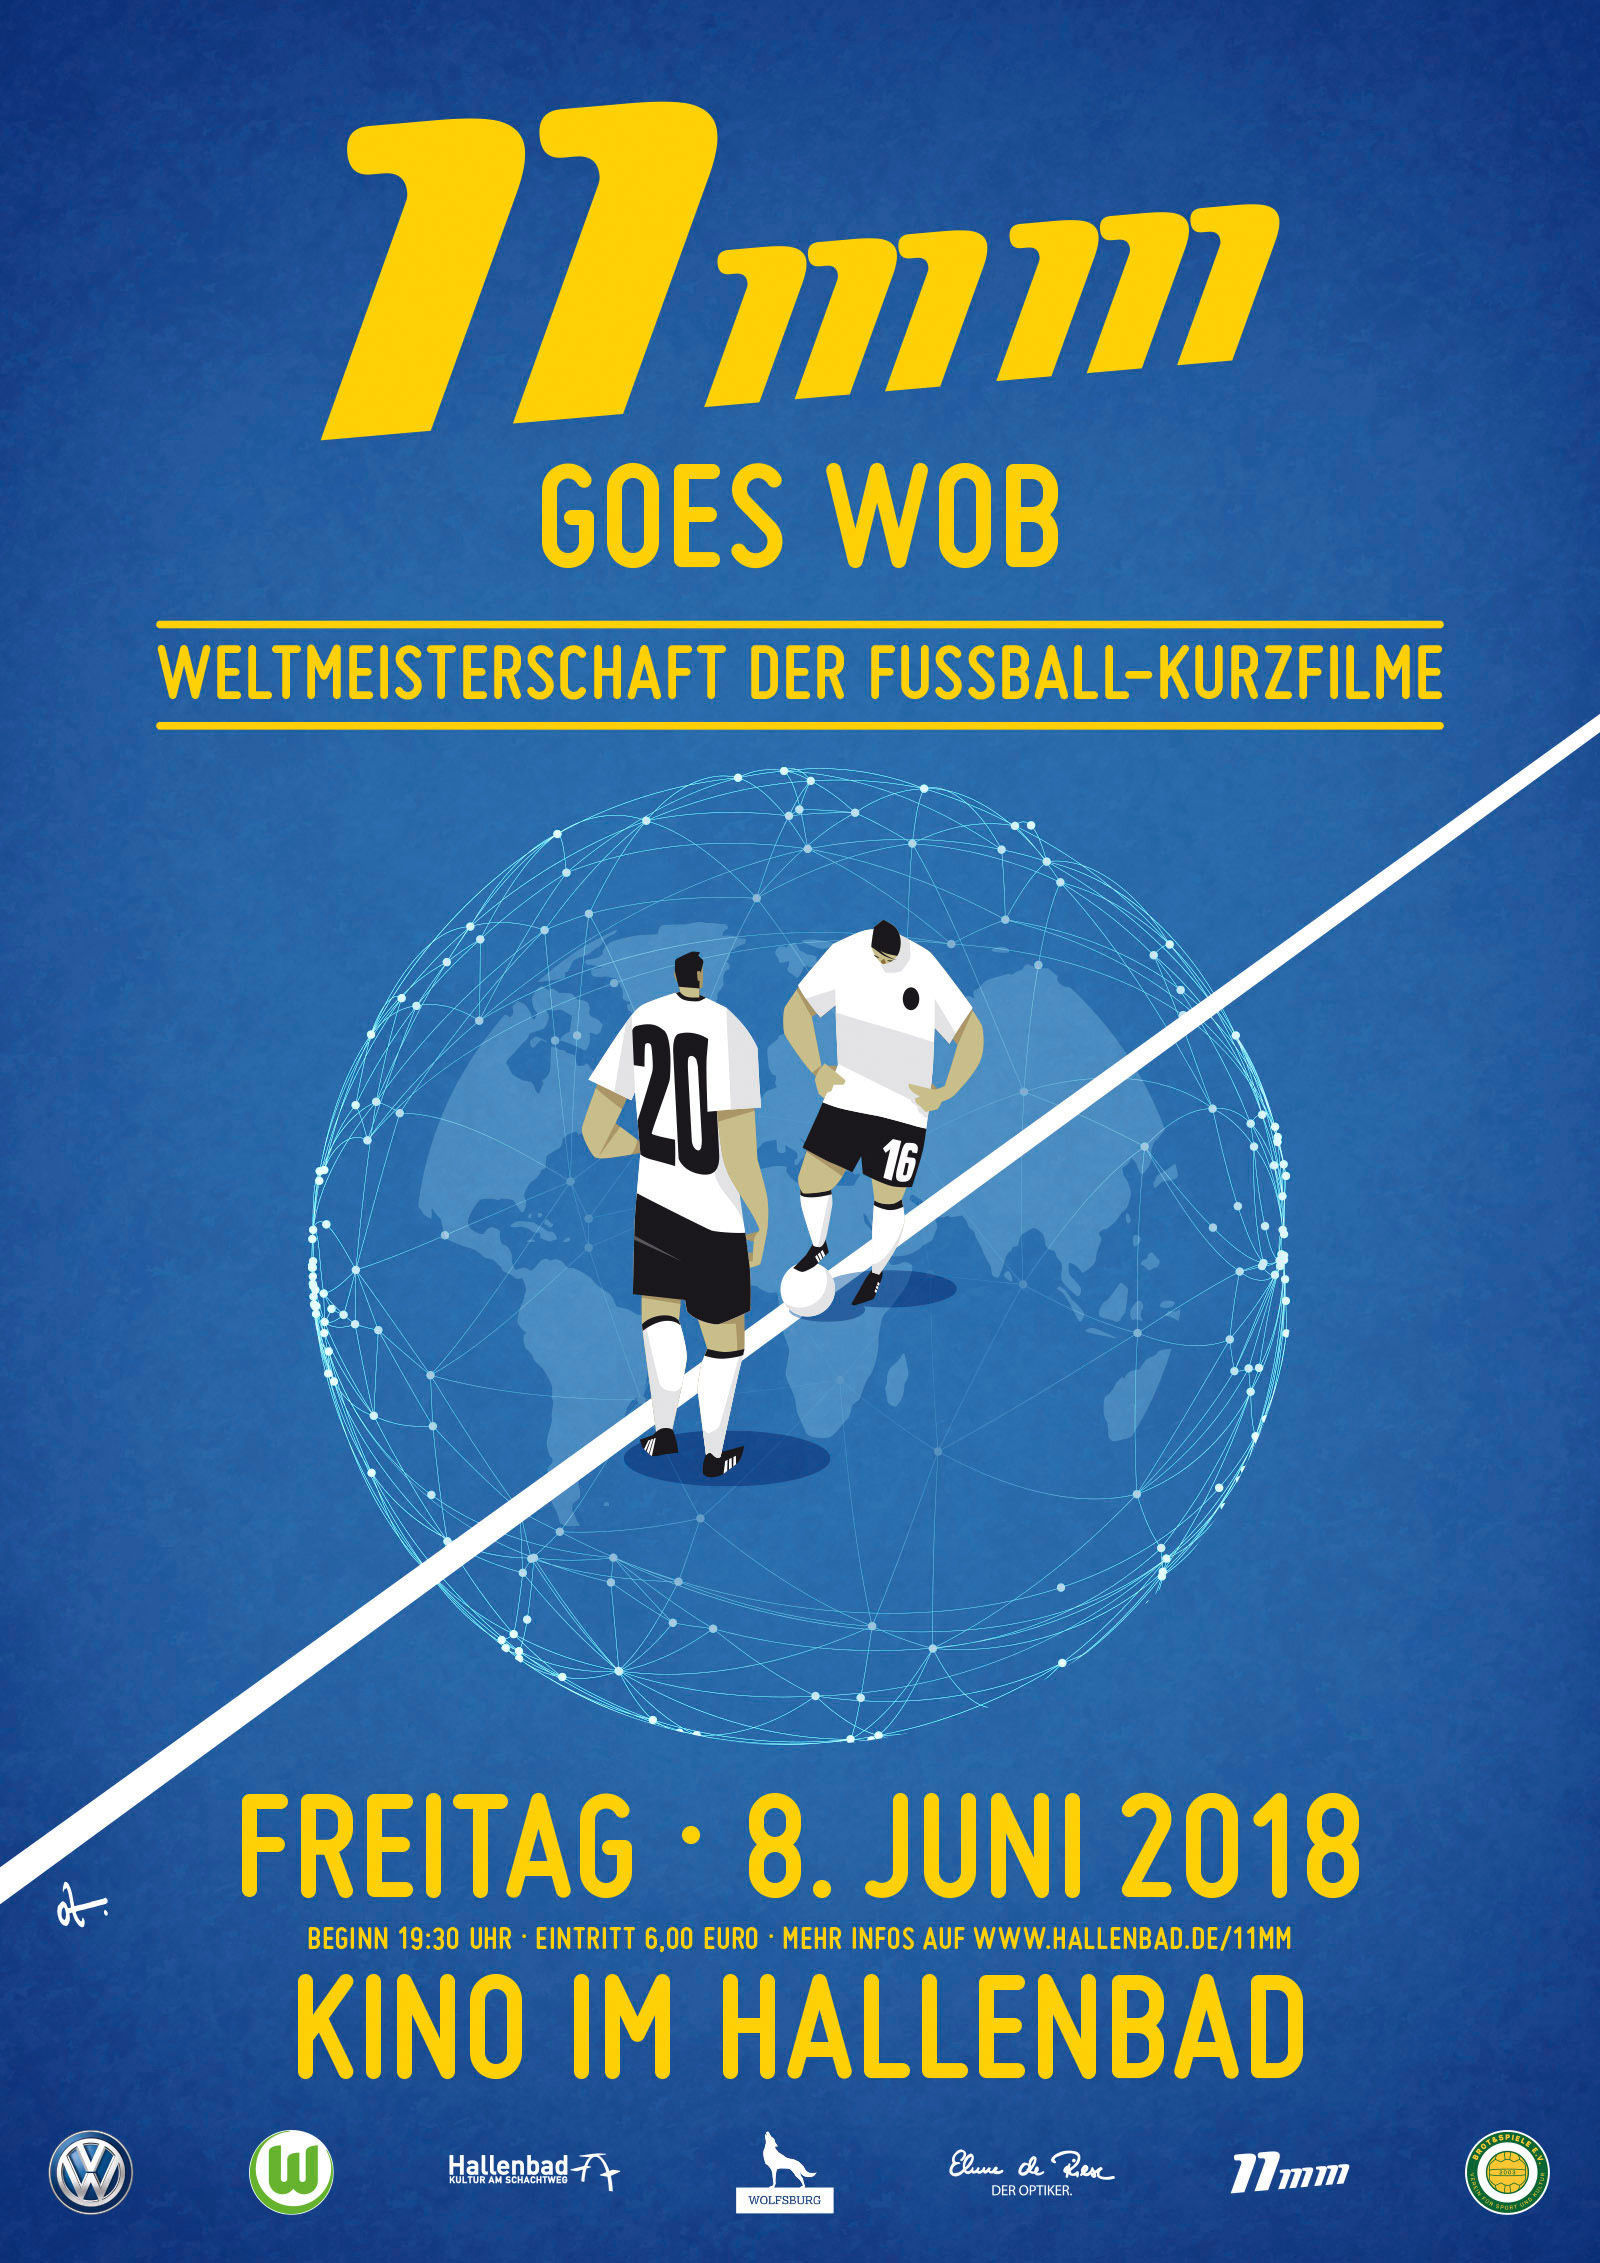 11mm goes WOB: Die Weltmeisterschaft der Fußball-Kurzfilme wird in Wolfsburg ausgetragen